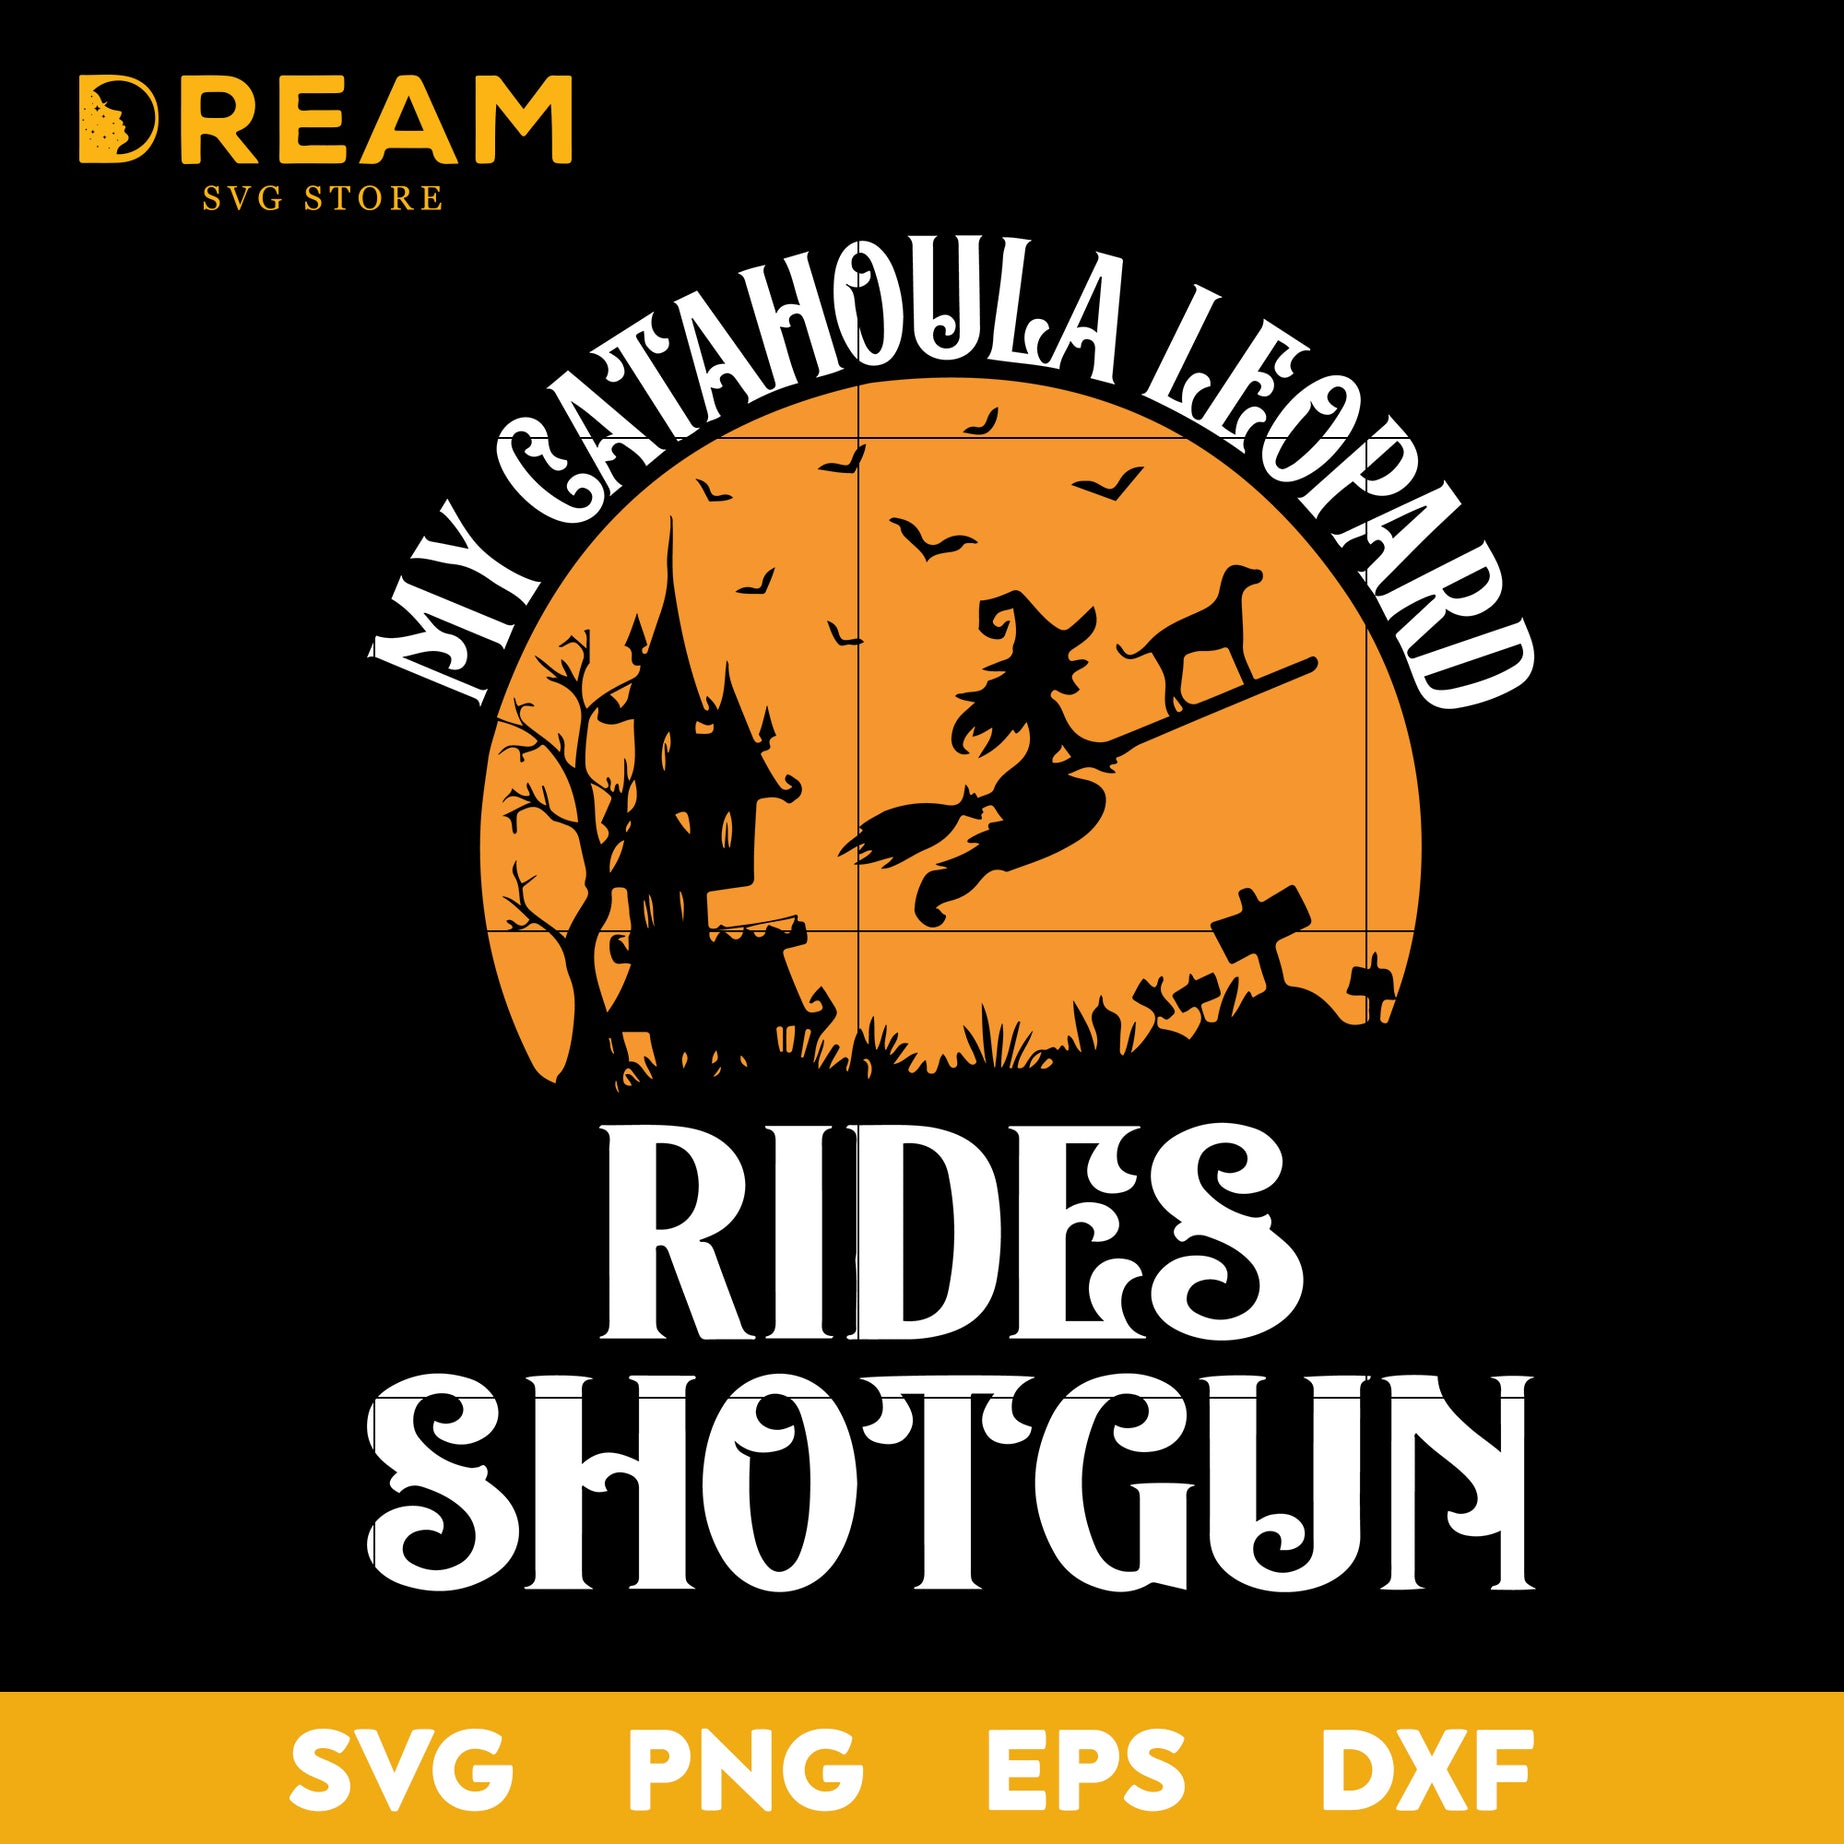 My catahoula leopard rides shotgun svg, halloween svg, png, dxf, eps digital file HLW2709206L